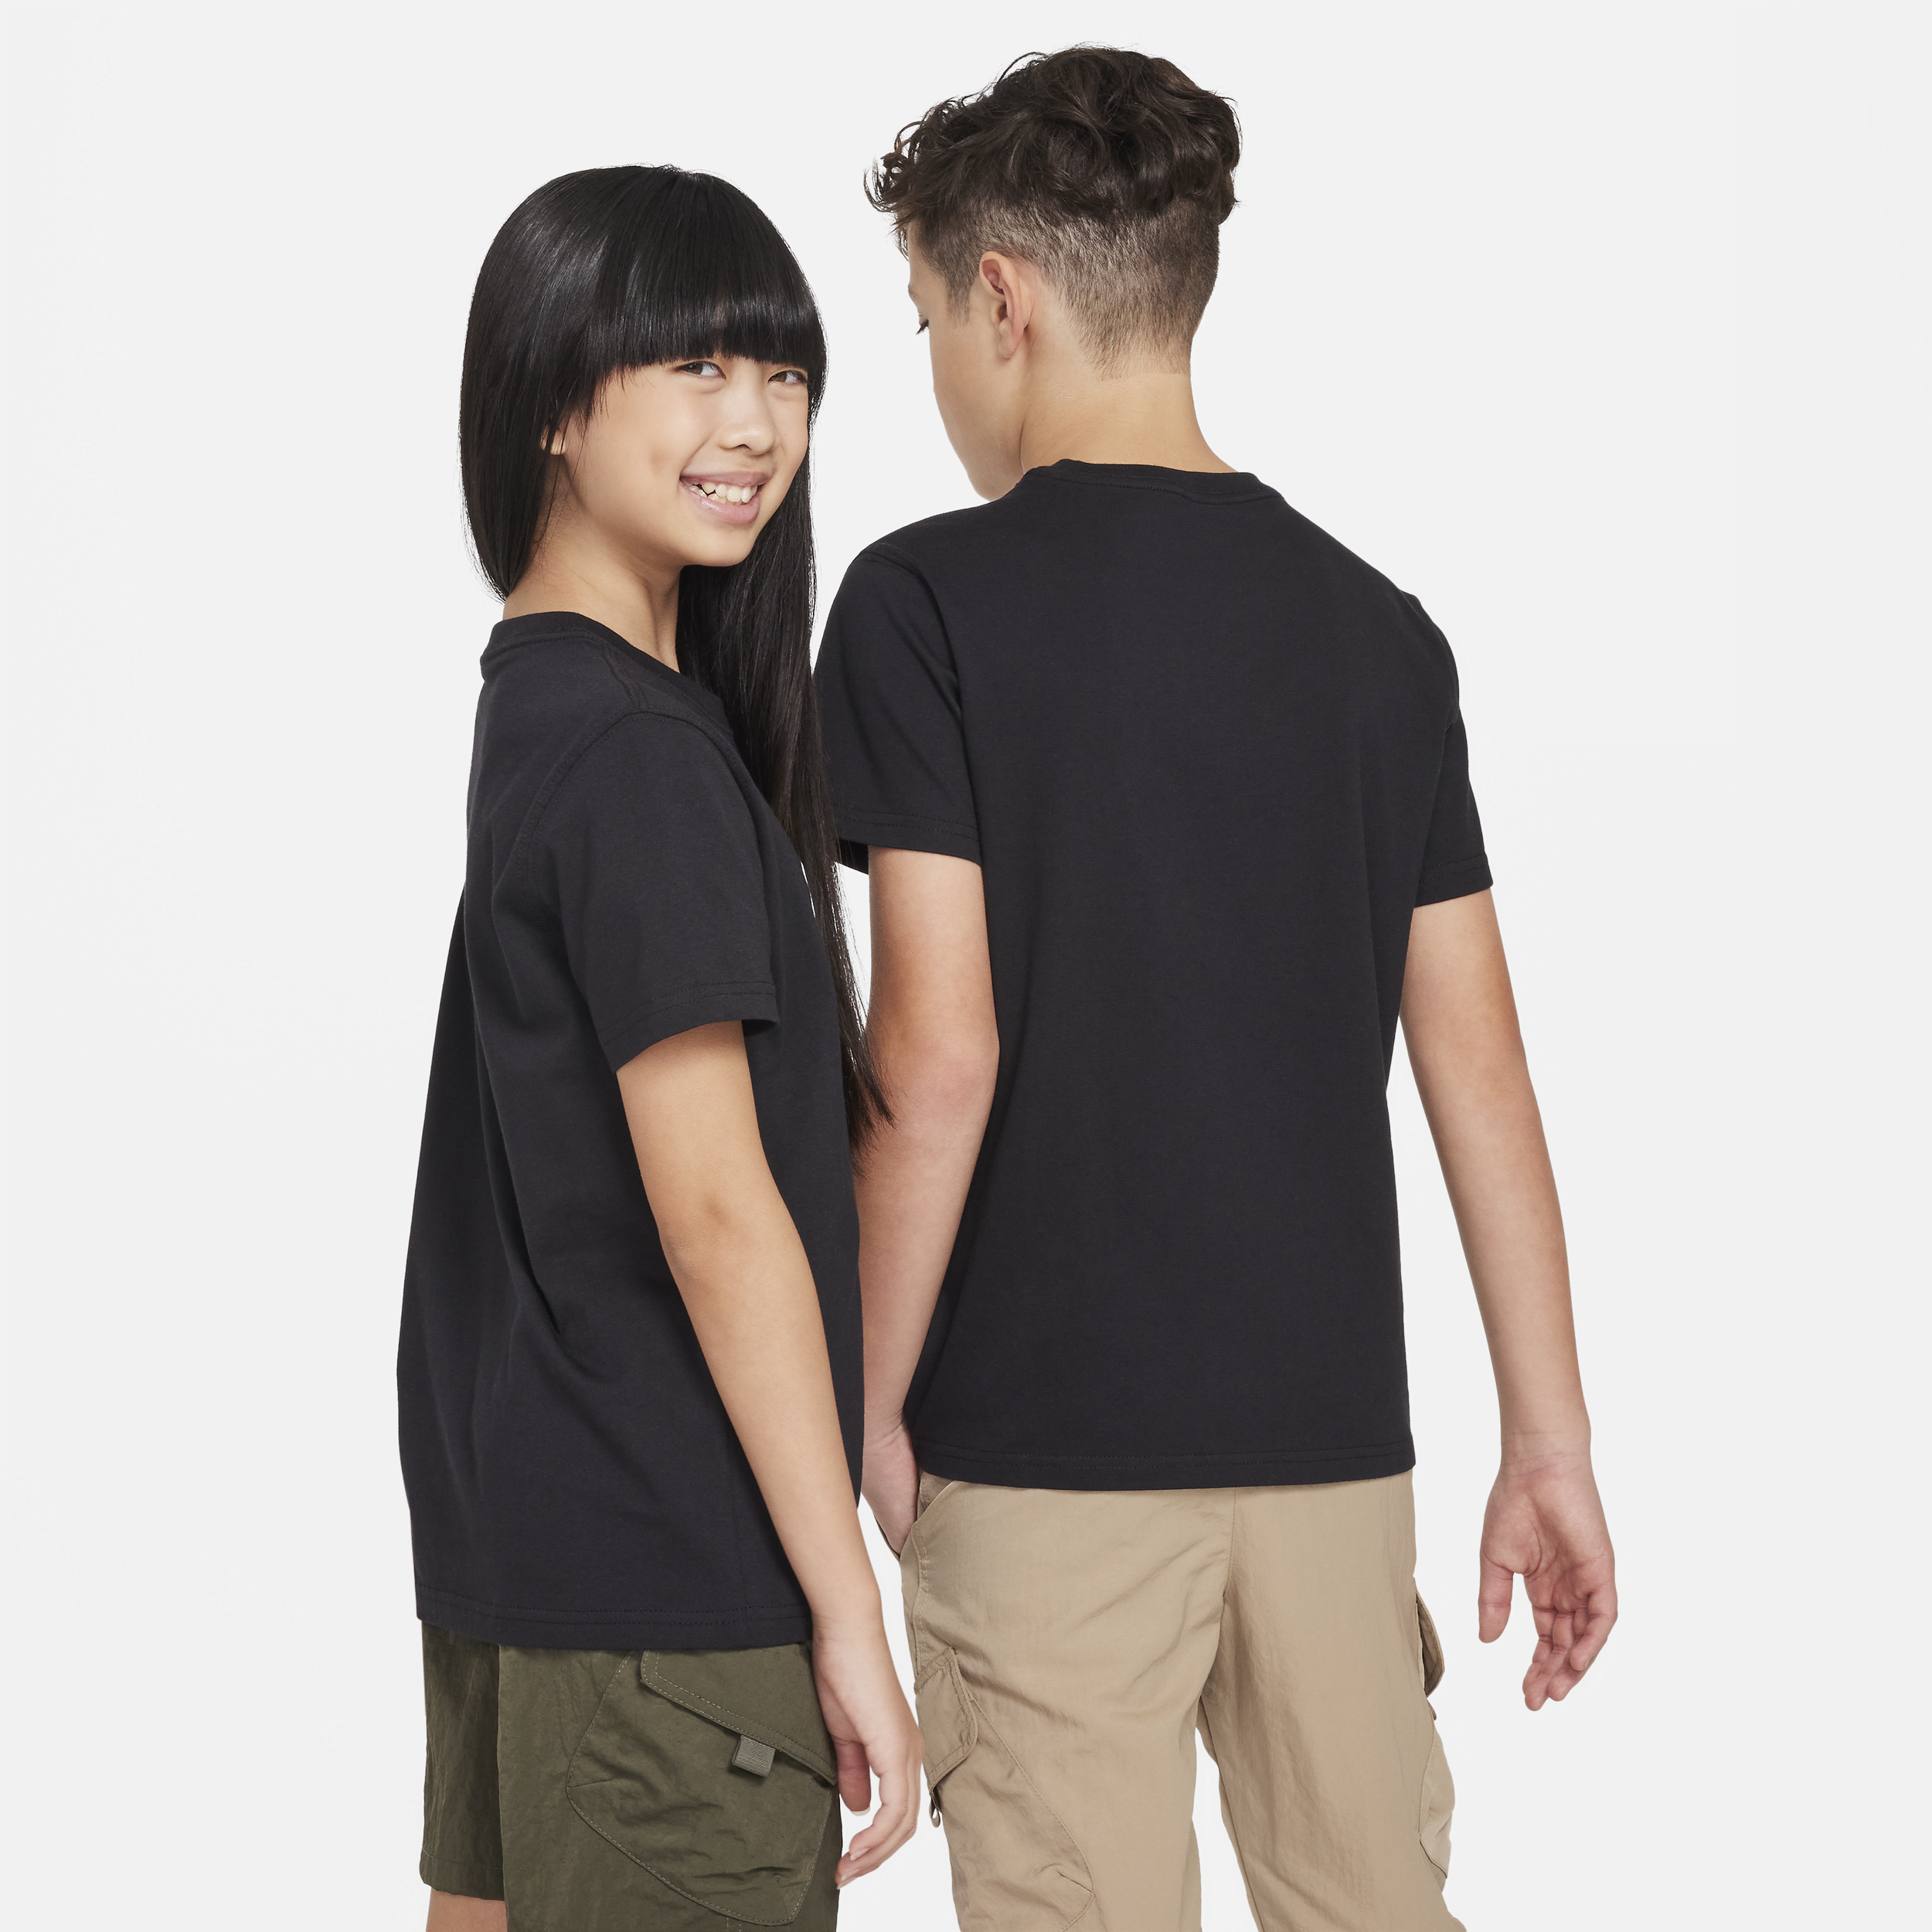 Nike SB T-shirt voor kids Zwart